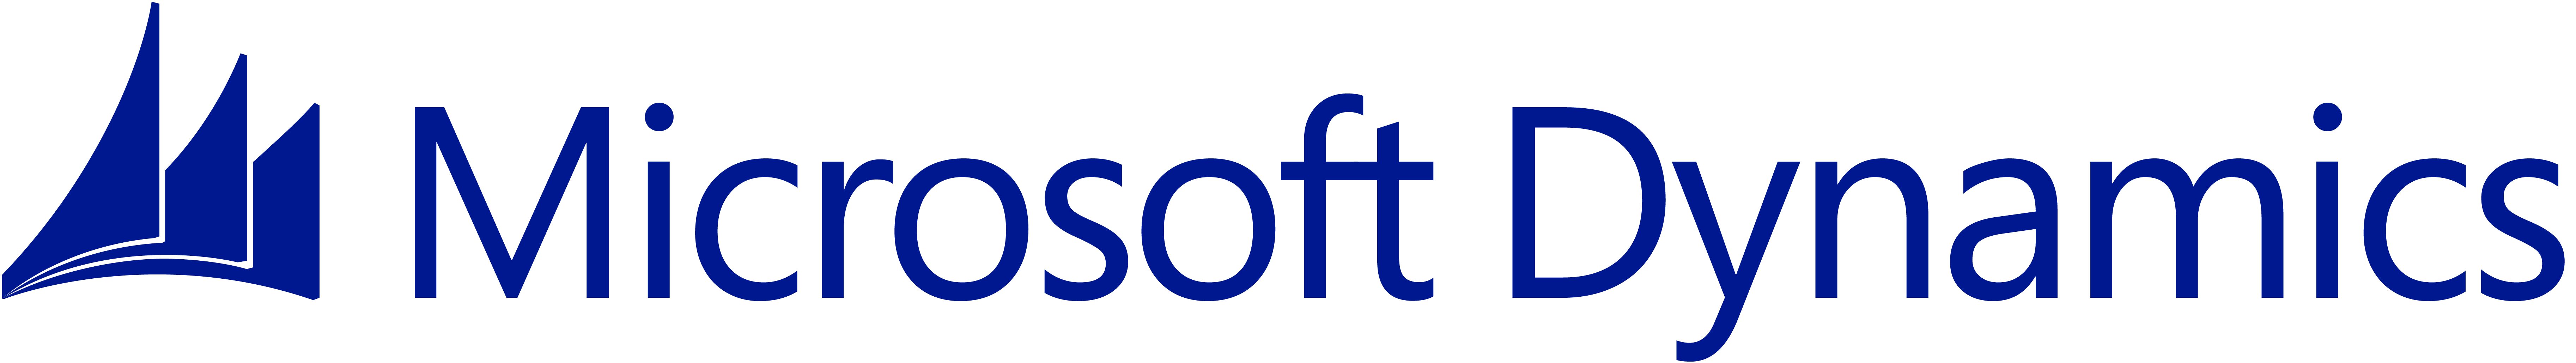 Microsoft Dynamics Logo - Management Training, Business Training and IT Training - TekSource ...